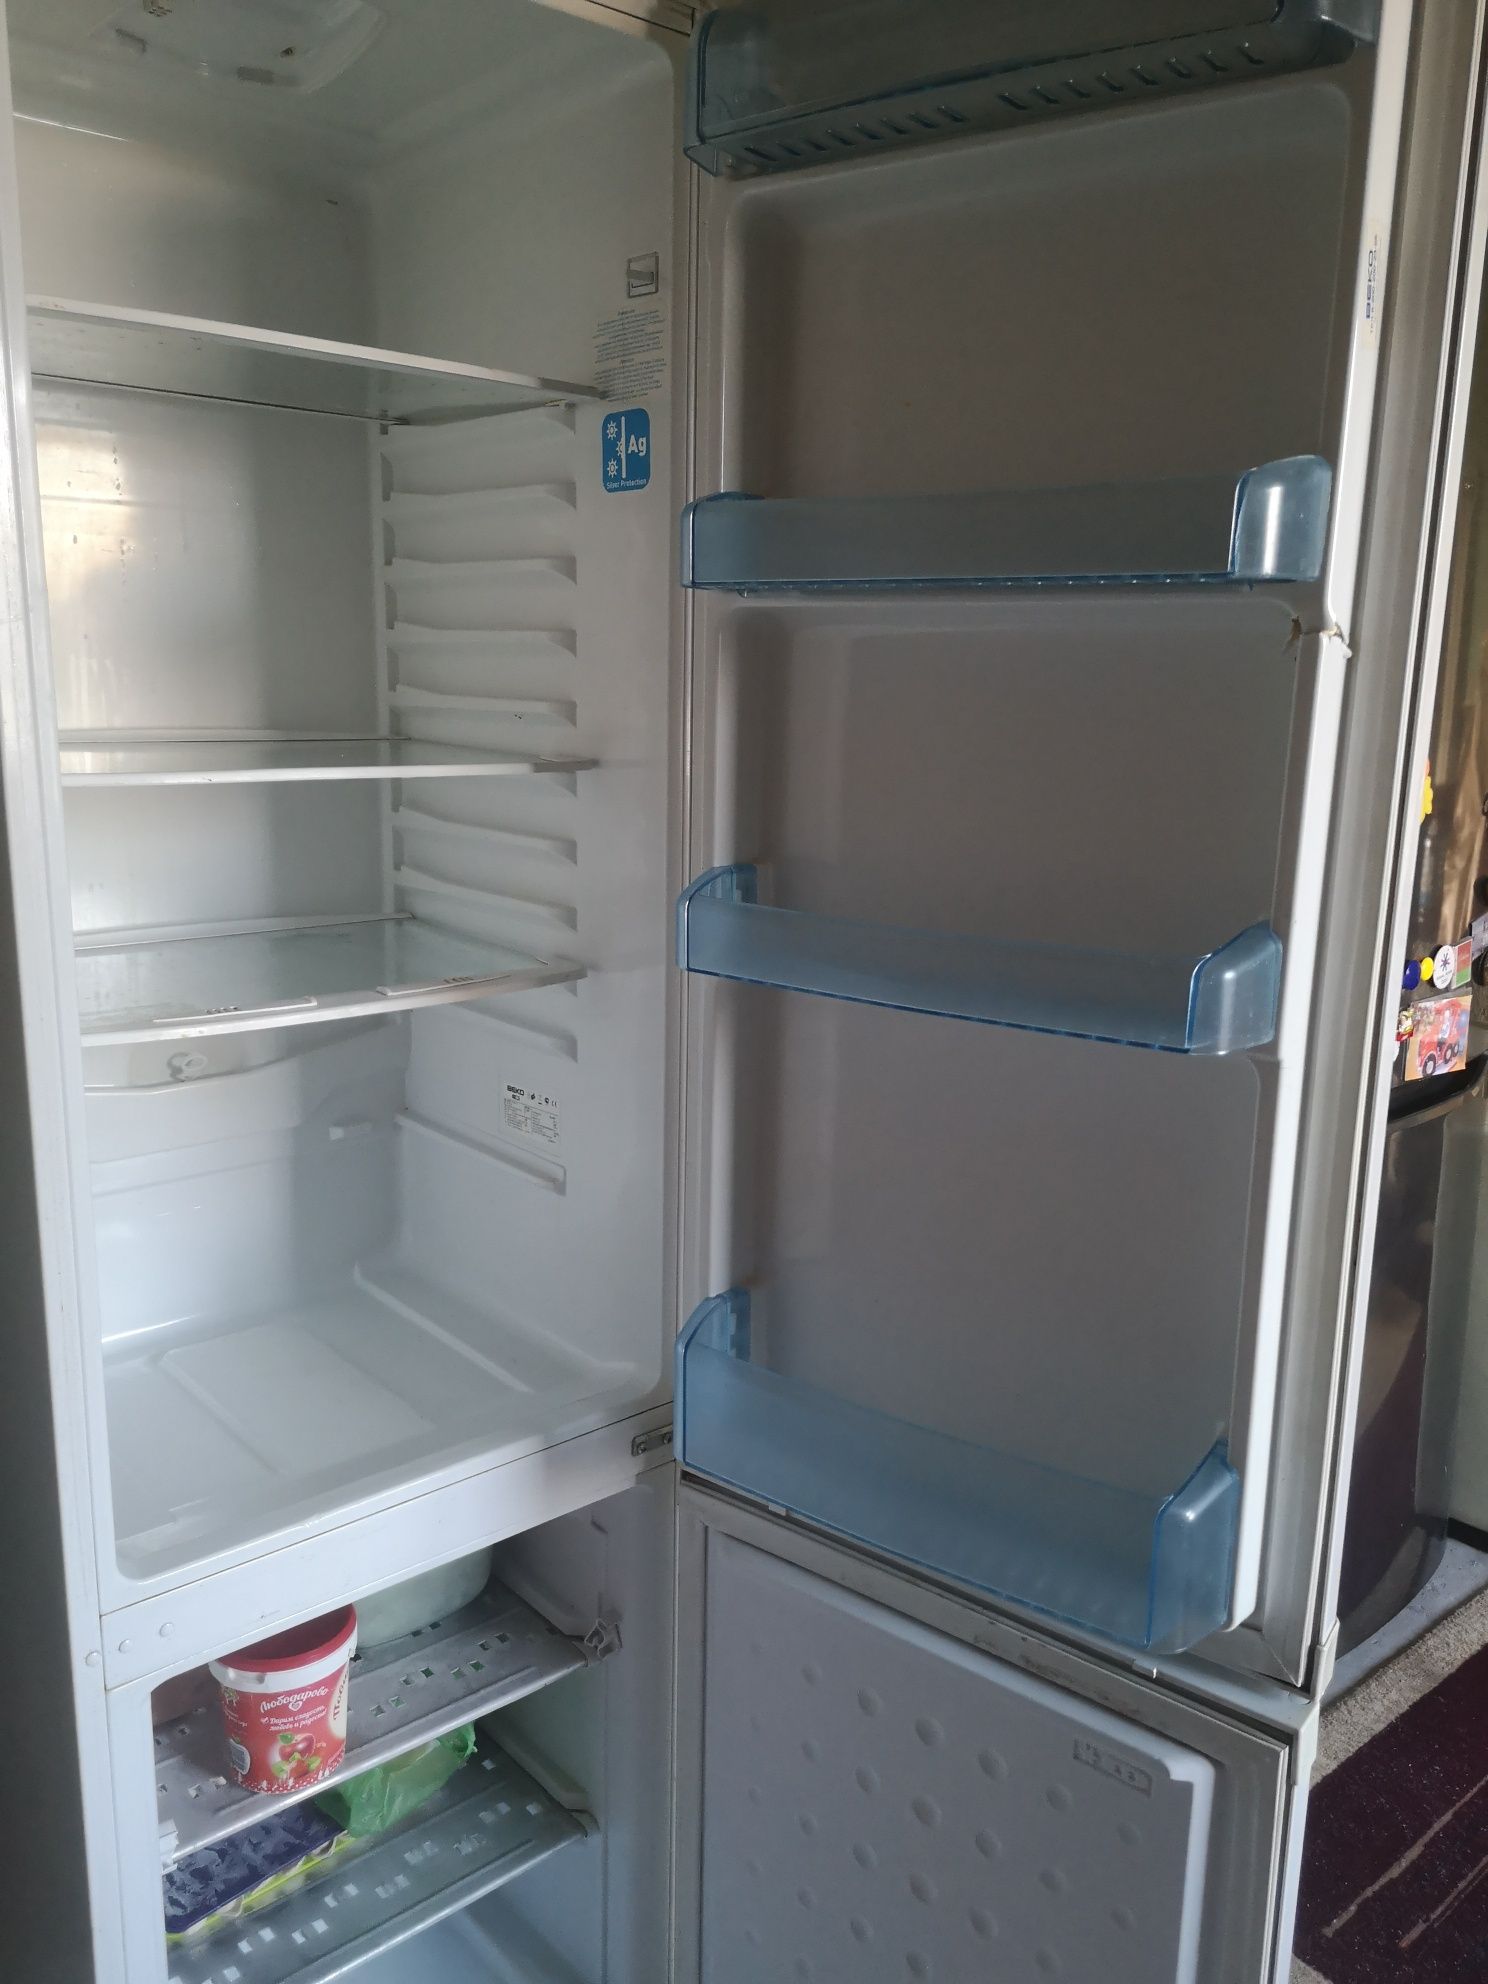 Продам корпус холодильников "Веко", "LG" 2хкамерные, б/у,по 15,0 тысяч